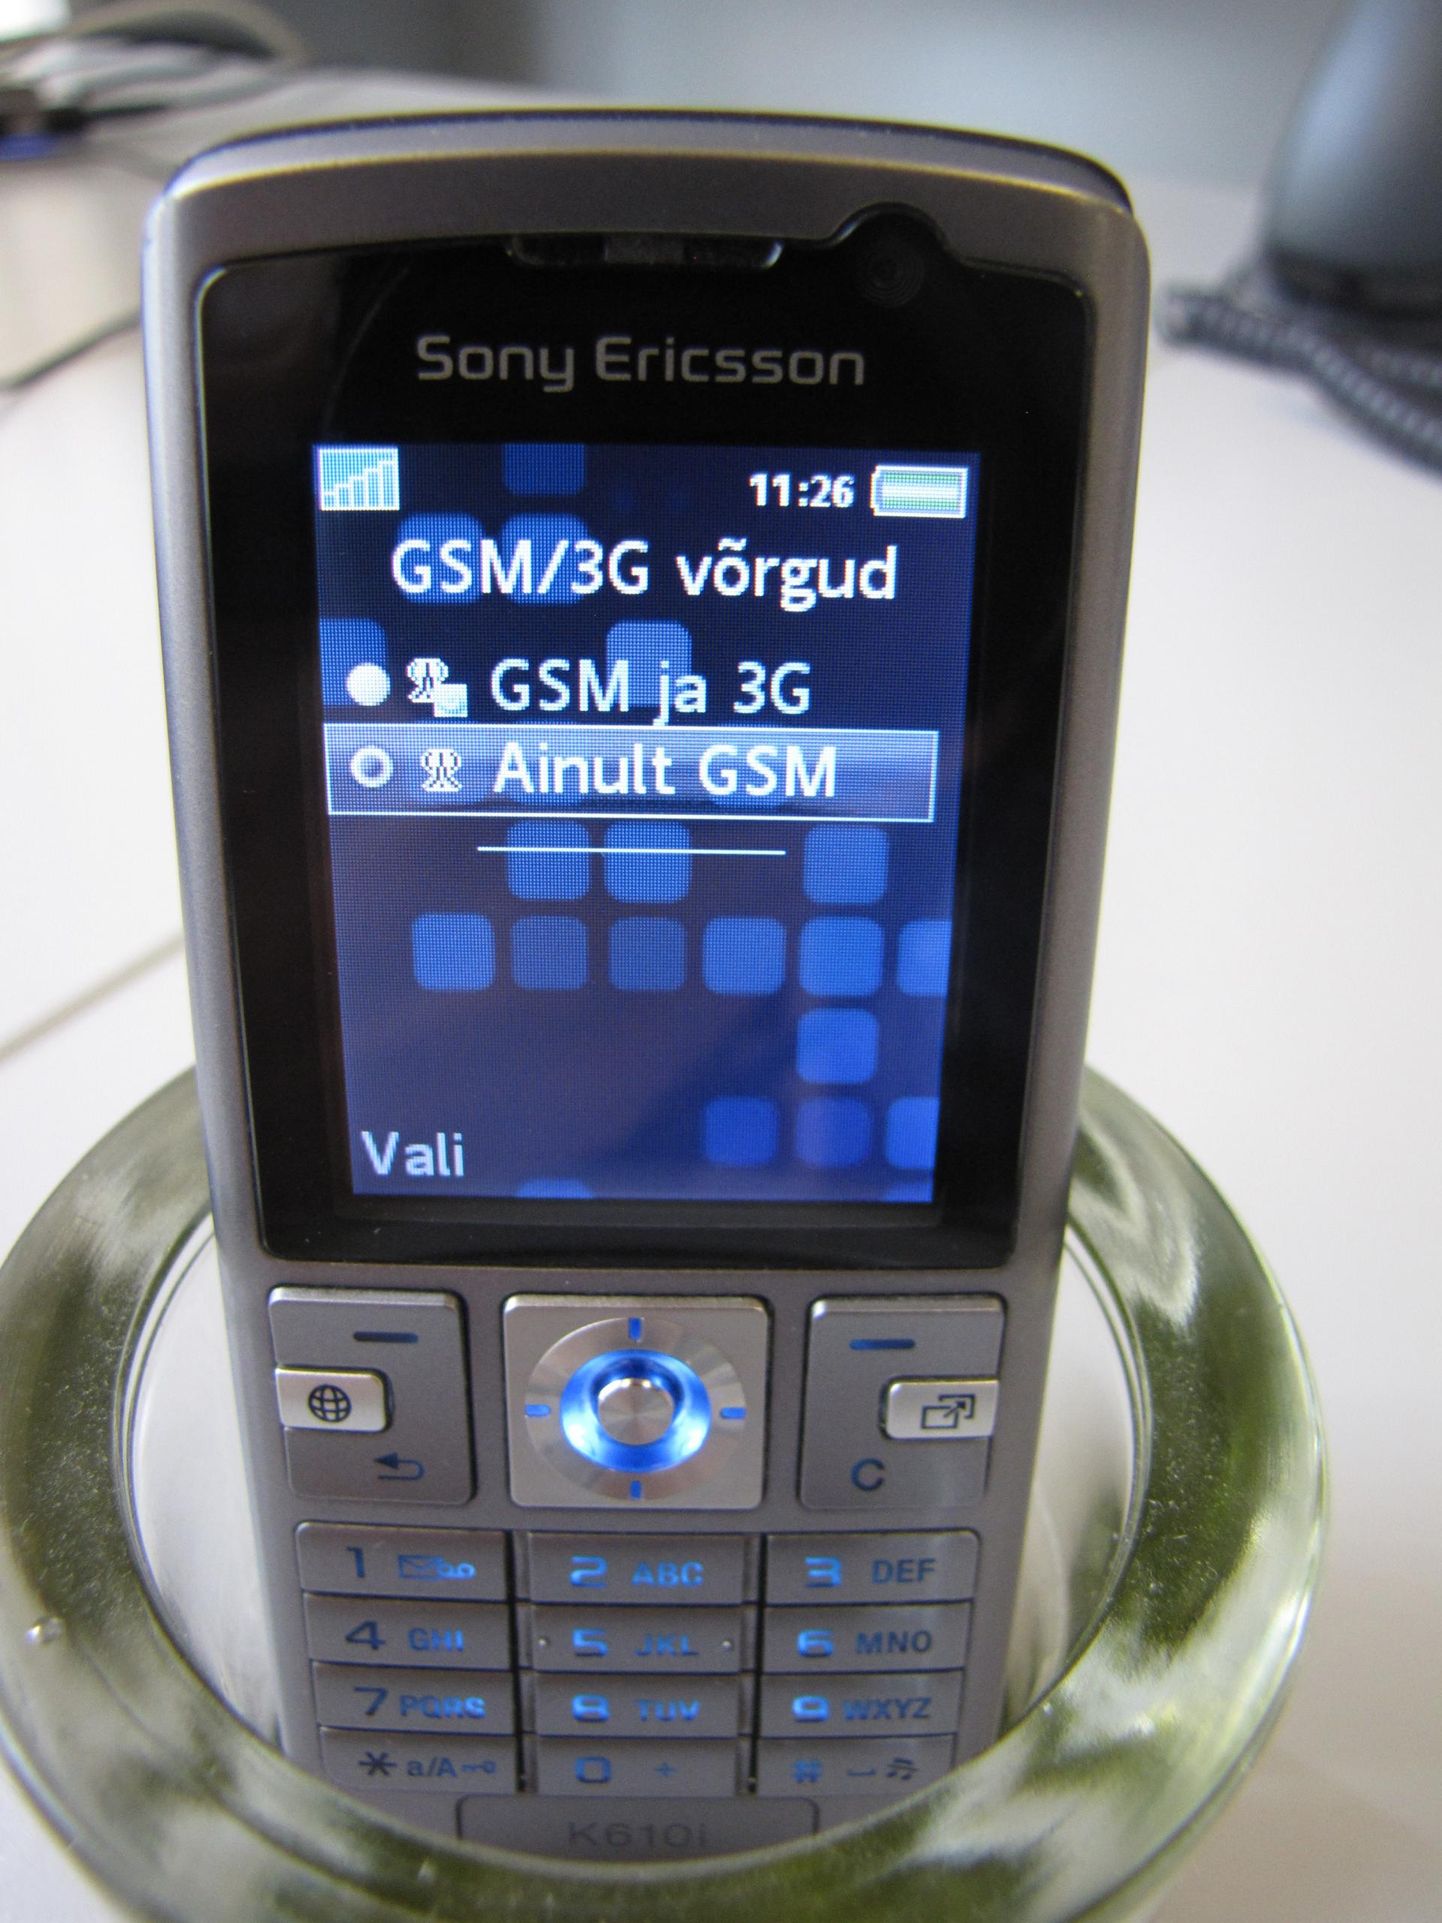 Pildil olev telefon Sony Ericsson K610i hakkas toonase EMT mobiilivõrgus tööle 2007. aasta 30. aprillil ning on vahetpidamata rivis olnud tänaseni. Küll on kasutusel kolmas aku. See telefon toetab GSM-sagedusi 900, 1800 ja 1900 MHz ning saab hakkama 3G-võrgus sagedusel 2100 MHz. Kui veel üle-eelmisel aastal oli Telia 3G-levi sel sagedusel leitav suures osas Eestis, siis nüüd enam mitte.